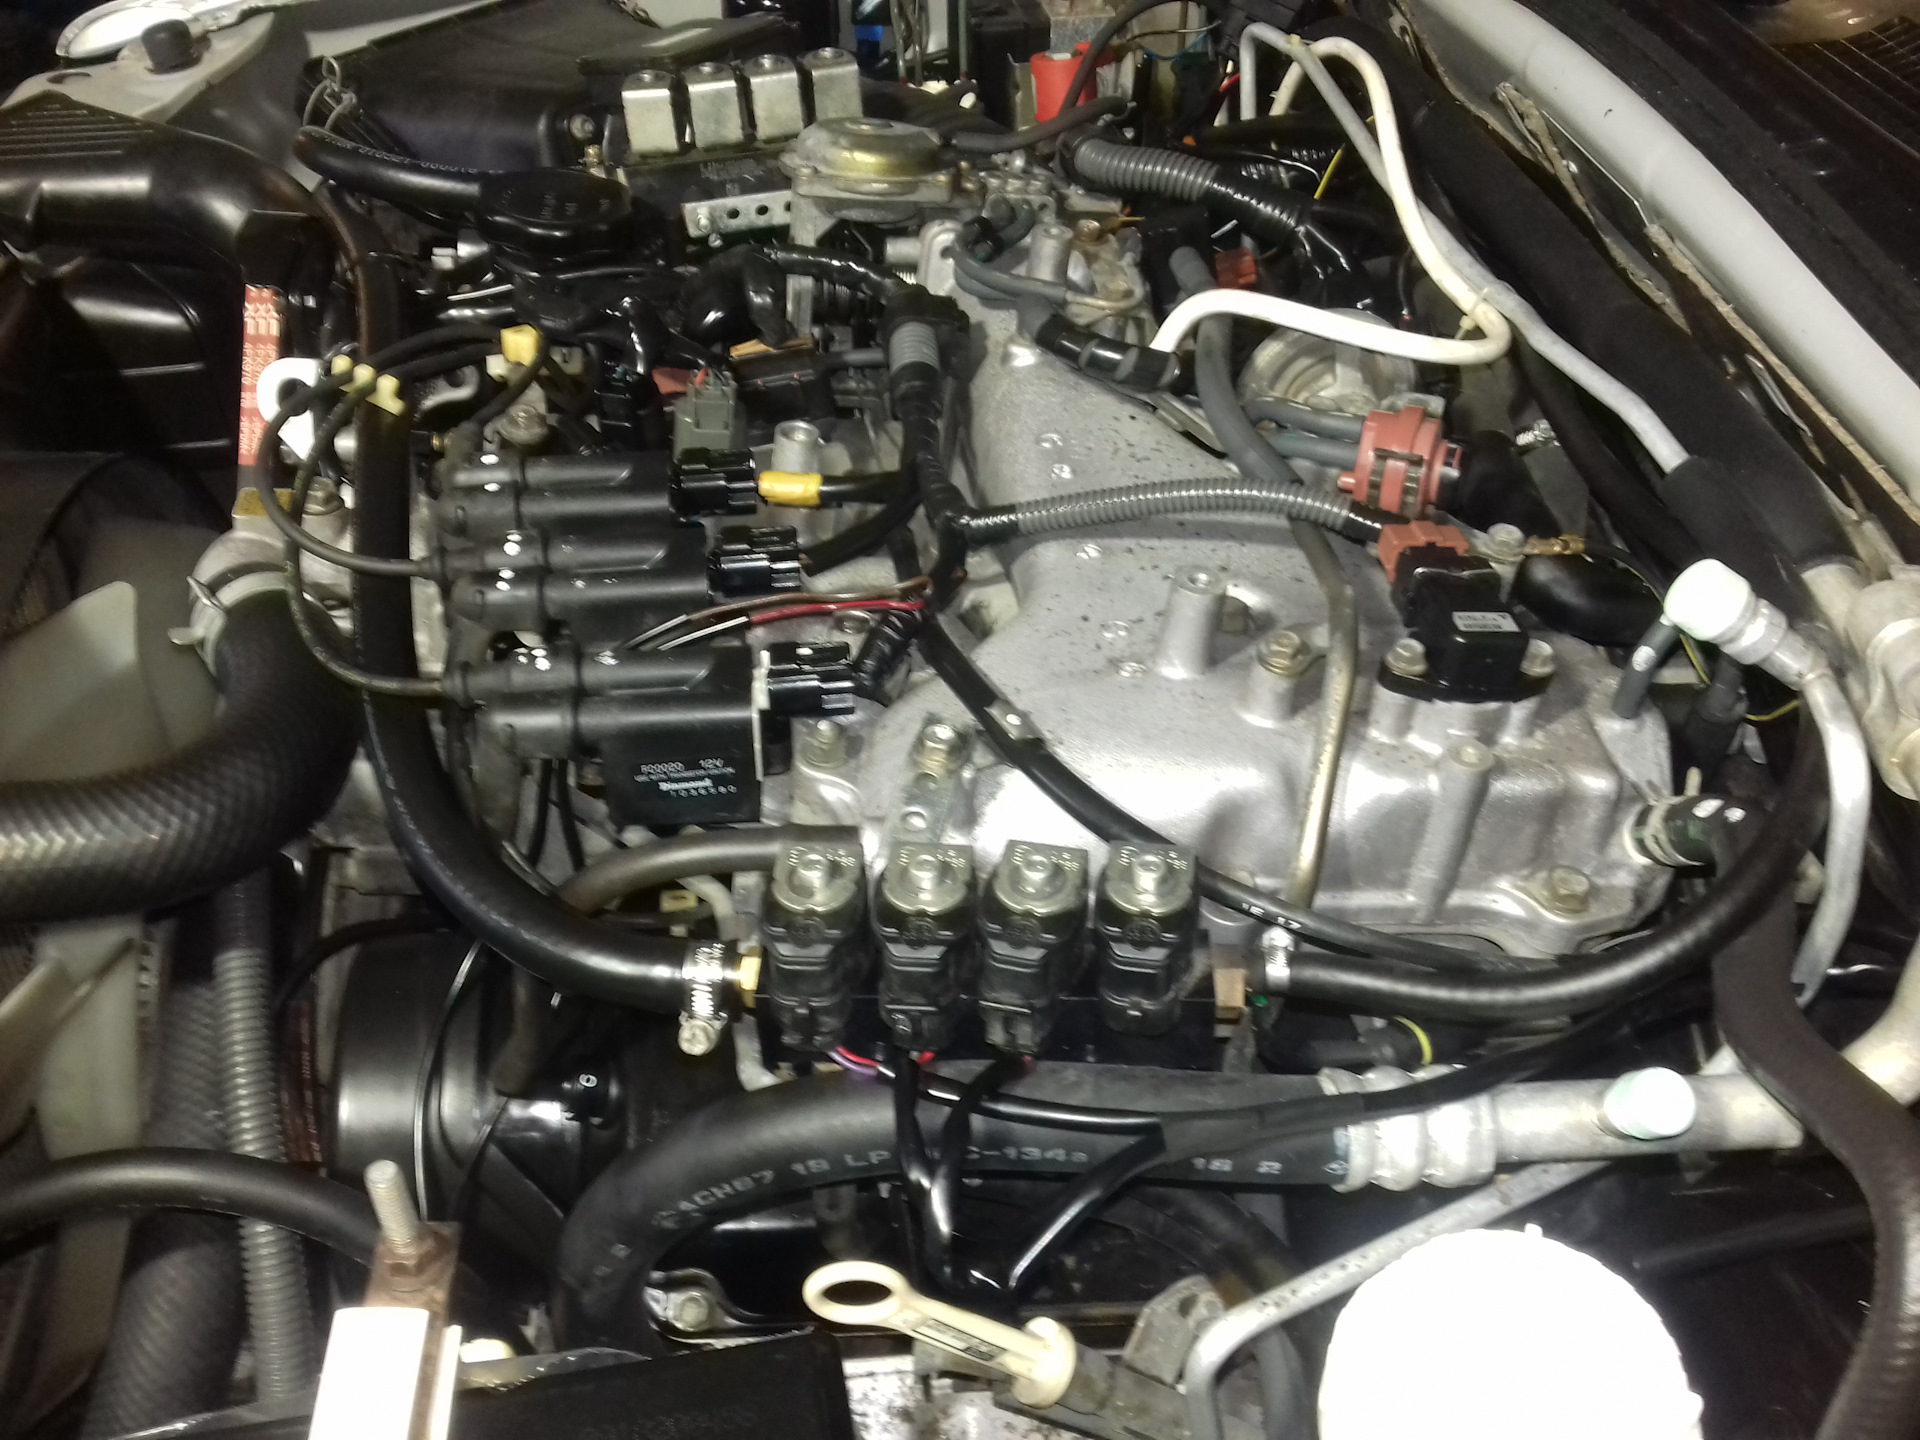 Паджеро спорт 1 двигатель. Впускной коллектор Митсубиси Монтеро спорт двигатель 6g72. Mitsubishi Pajero Sport 3.0 (6g72. Дополнительный фильтр для бензинового двигателя 6g74. 6g72 24 двигатель Монтеро спорт верхняя часть коллектора.